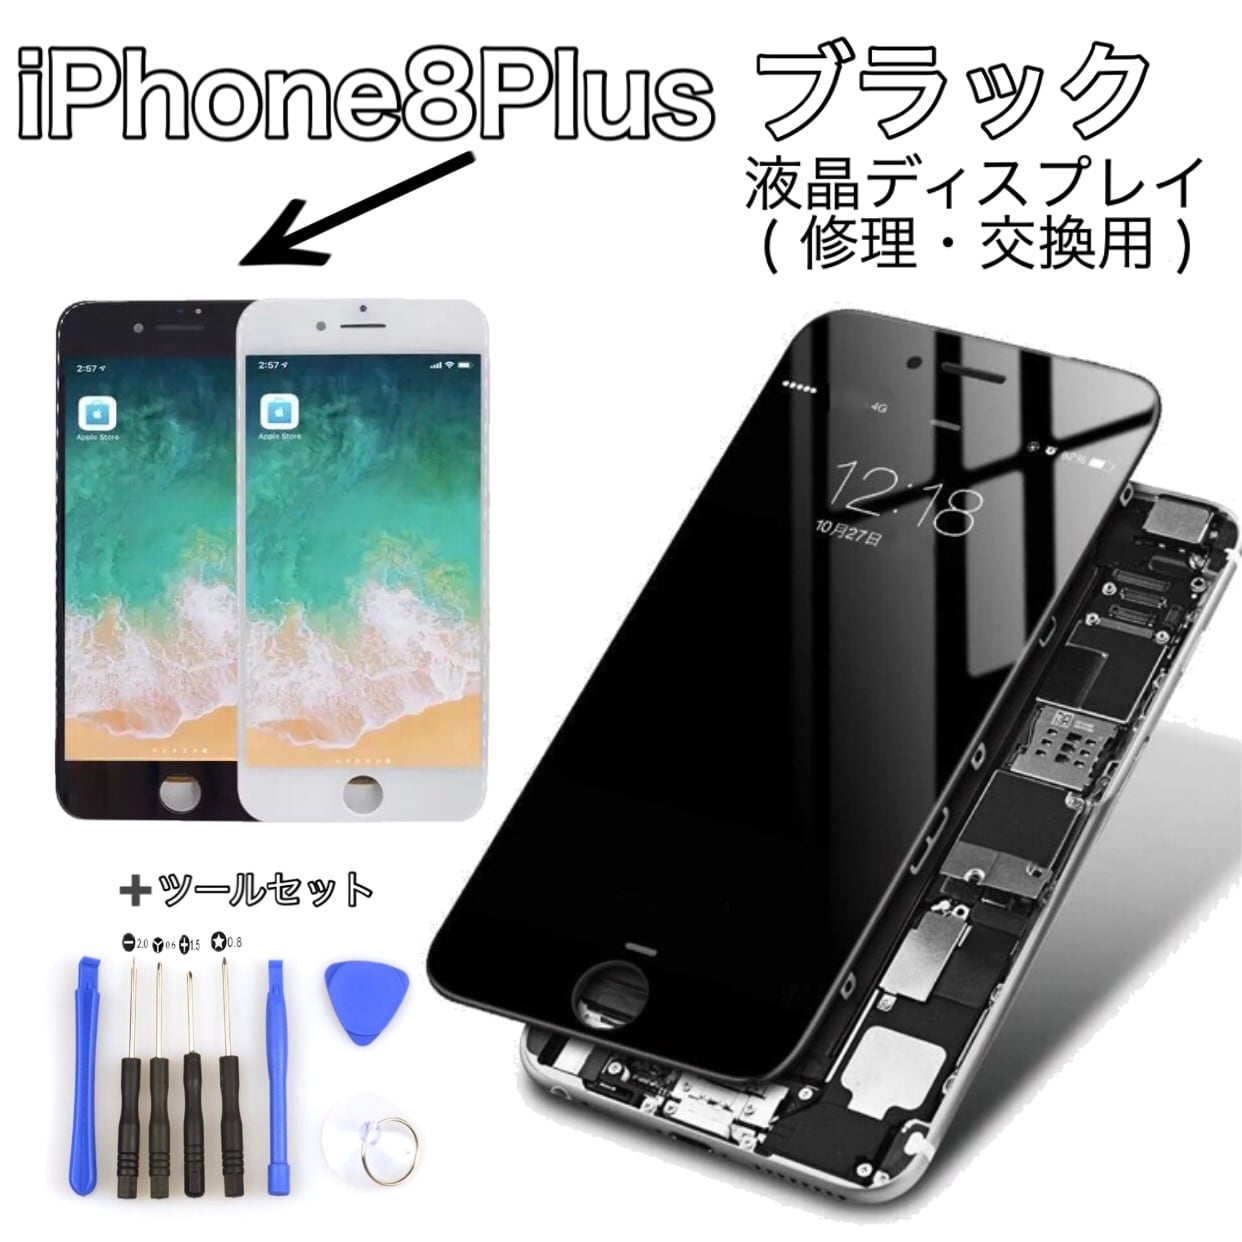 クーポン格安 iPhone8 Plus 64GB SIMフリー 画面割れ | artfive